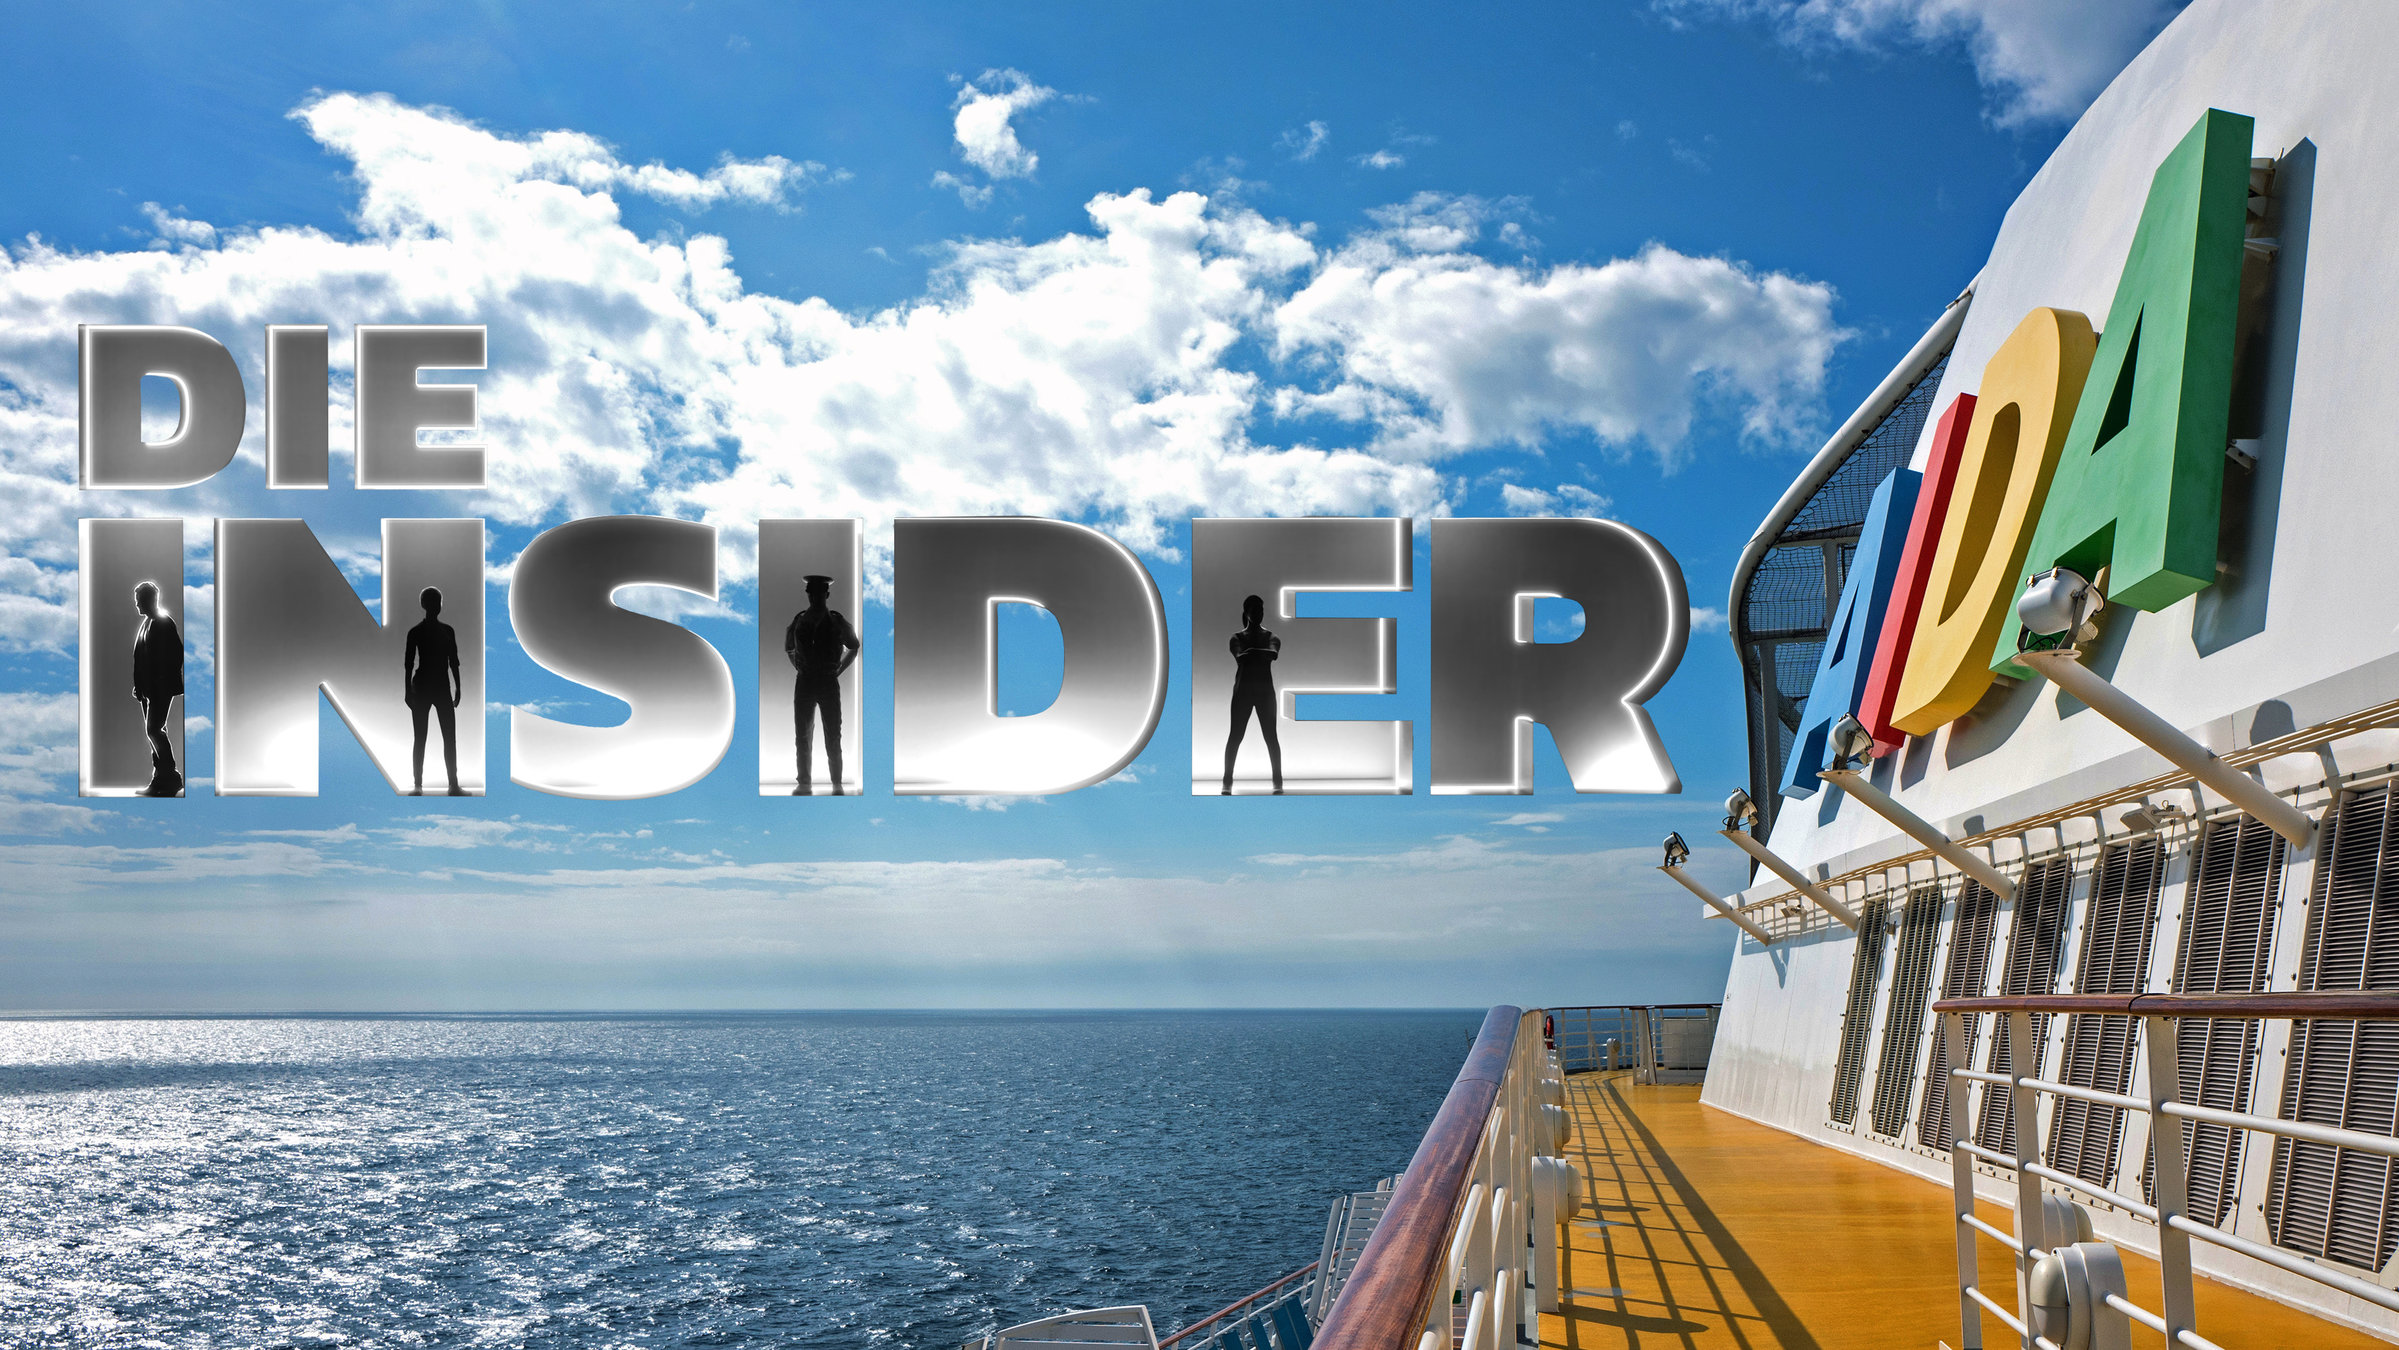 "AIDA: Die Insider": Fotomontage: Ein Kreuzfahrtschiff im Anschnitt befindet sich auf dem Ozean. Über dem Himmel liegt die Titelgrafik "Die Insider".